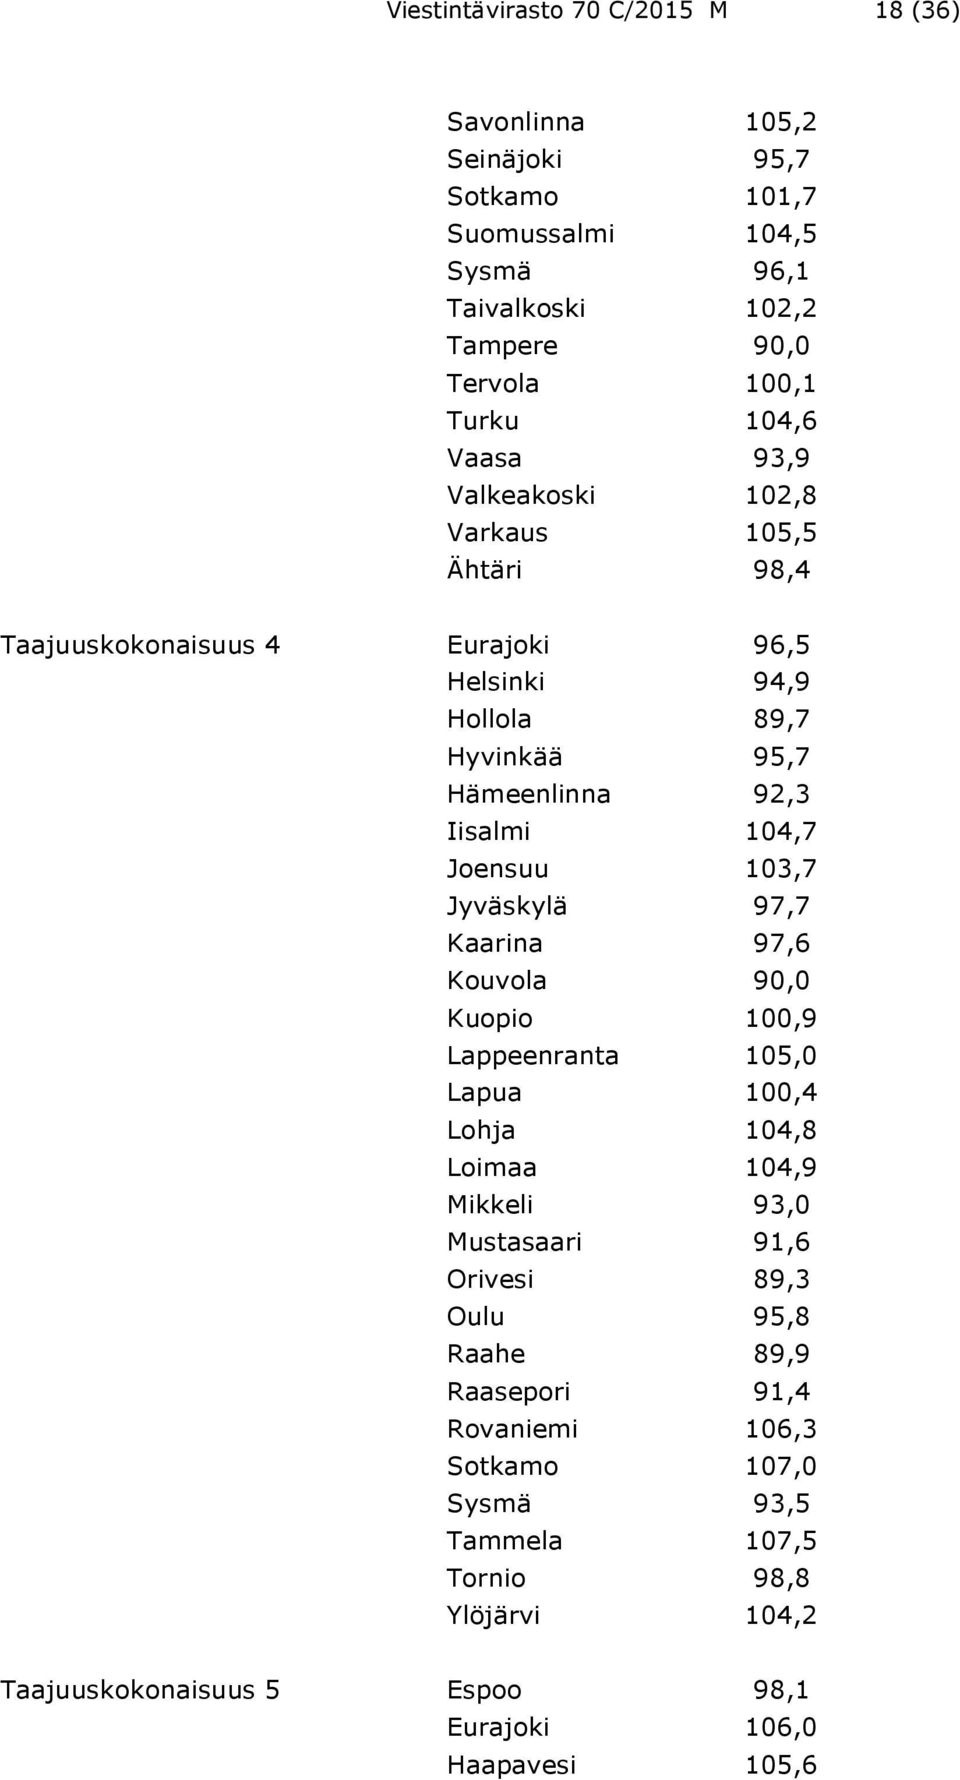 103,7 Jyväskylä 97,7 Kaarina 97,6 Kouvola 90,0 Kuopio 100,9 Lappeenranta 105,0 Lapua 100,4 Lohja 104,8 Loimaa 104,9 Mikkeli 93,0 Mustasaari 91,6 Orivesi 89,3 Oulu 95,8